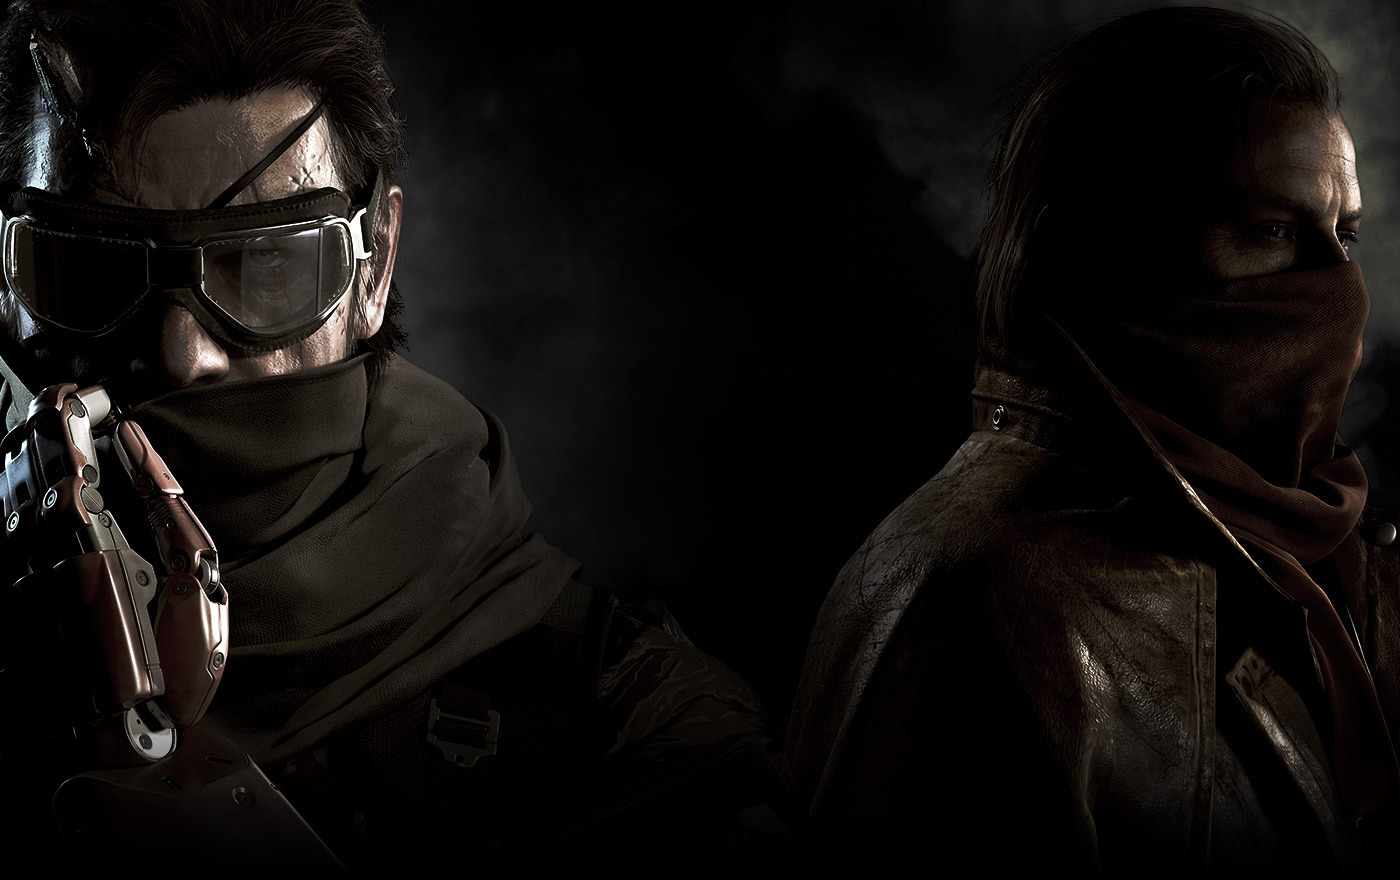 Руководство по Metal Gear Solid 5: как устроена одиночная кампания и мультиплеер